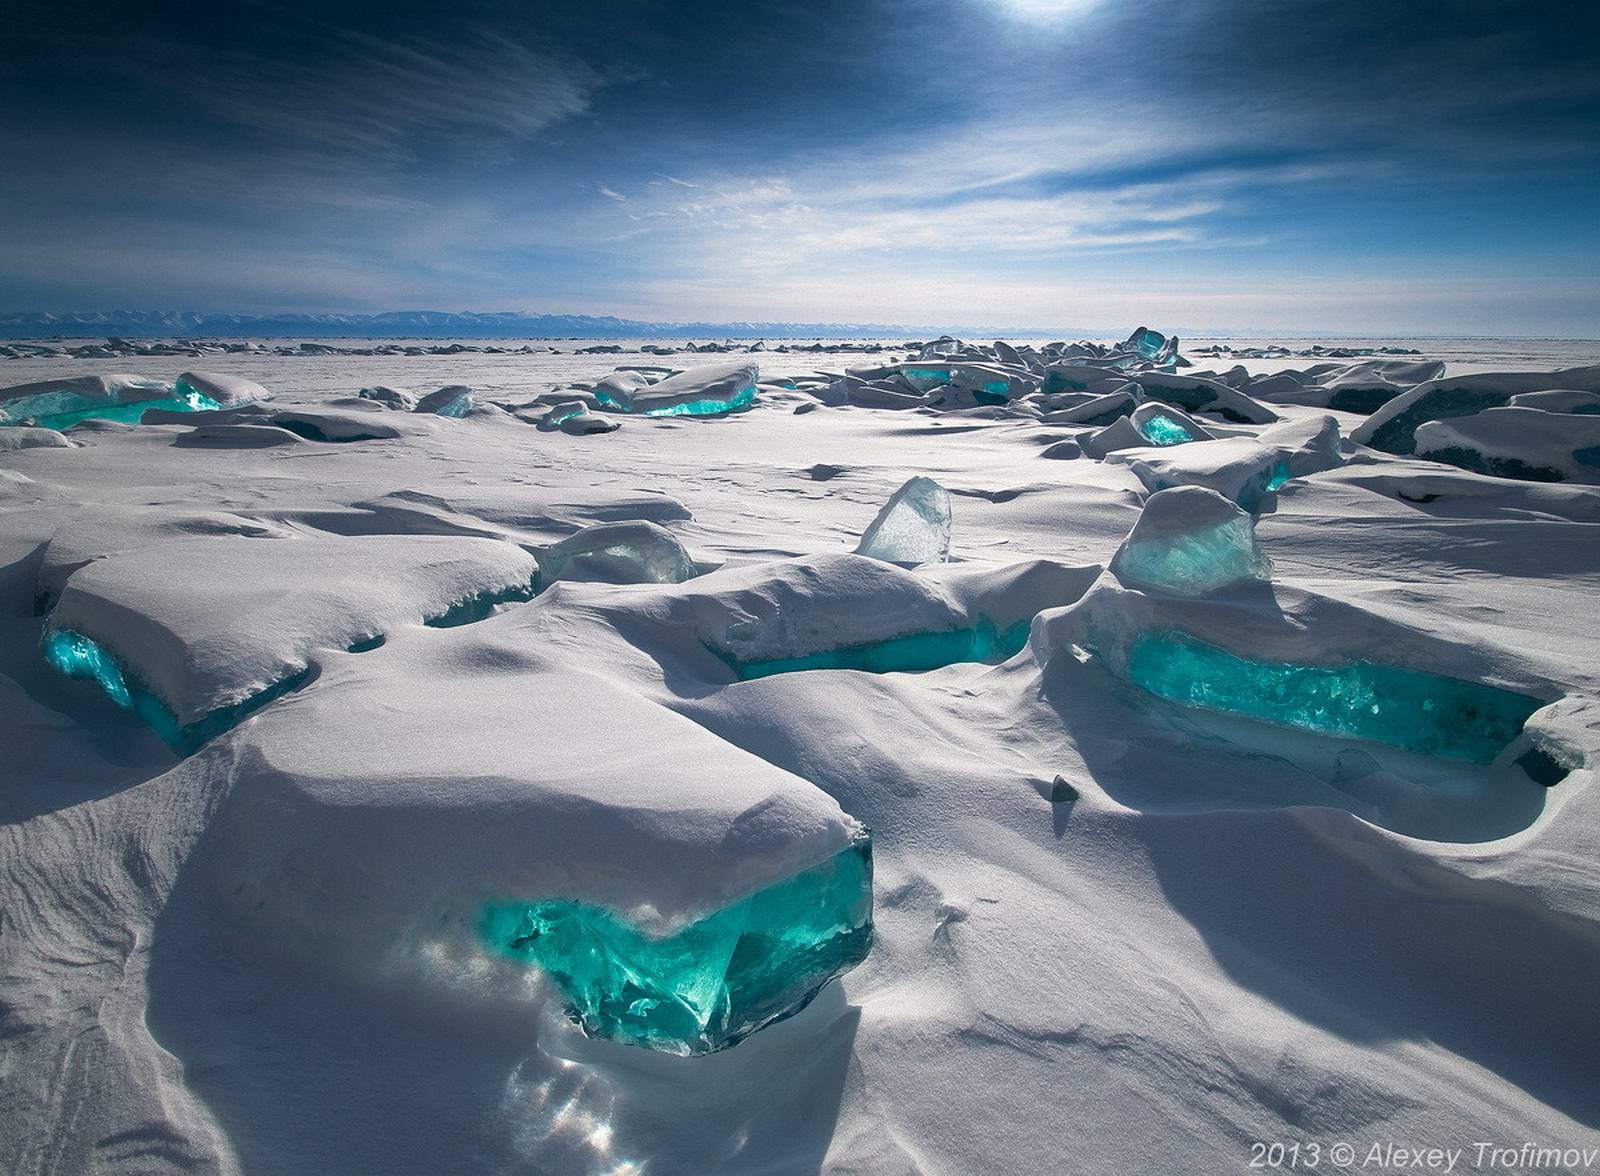 lake baikal turquoise ice - 2013 Alexey Trofimov